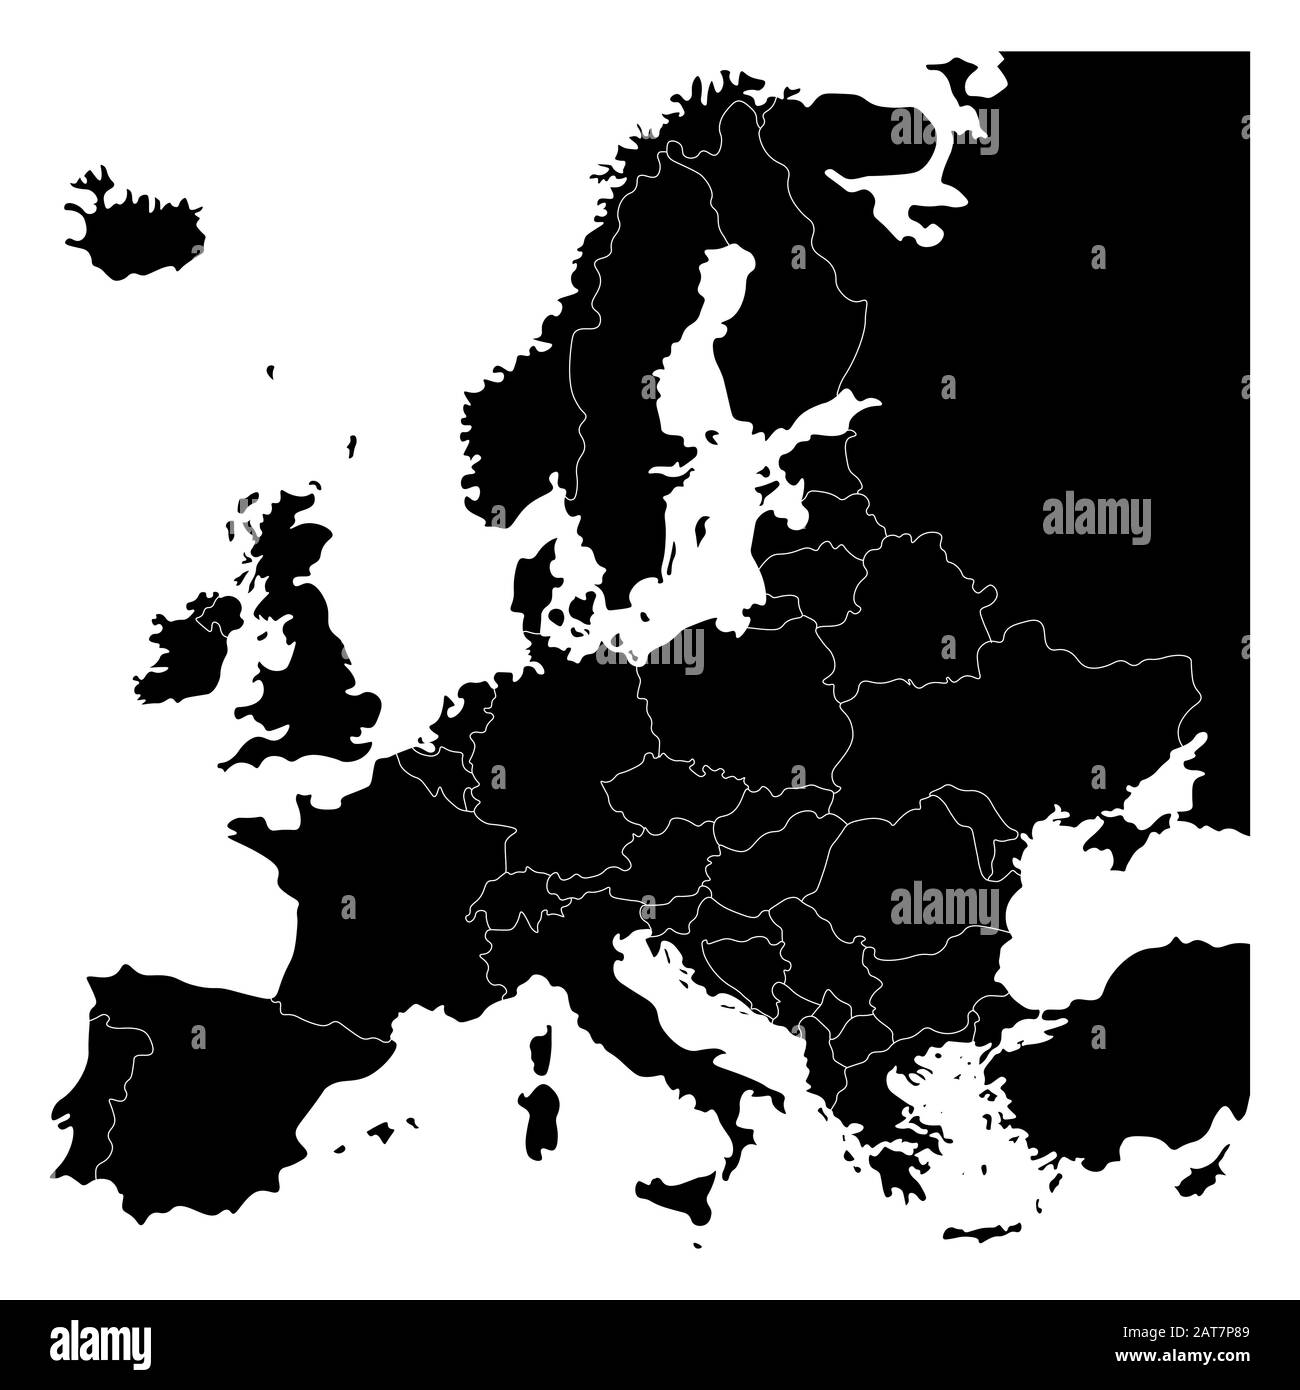 Karte des europäischen Kontinents. Ländergrenzen und europa. Isolierte Vektorgrafiken in schwarzer Farbe. Stock Vektor